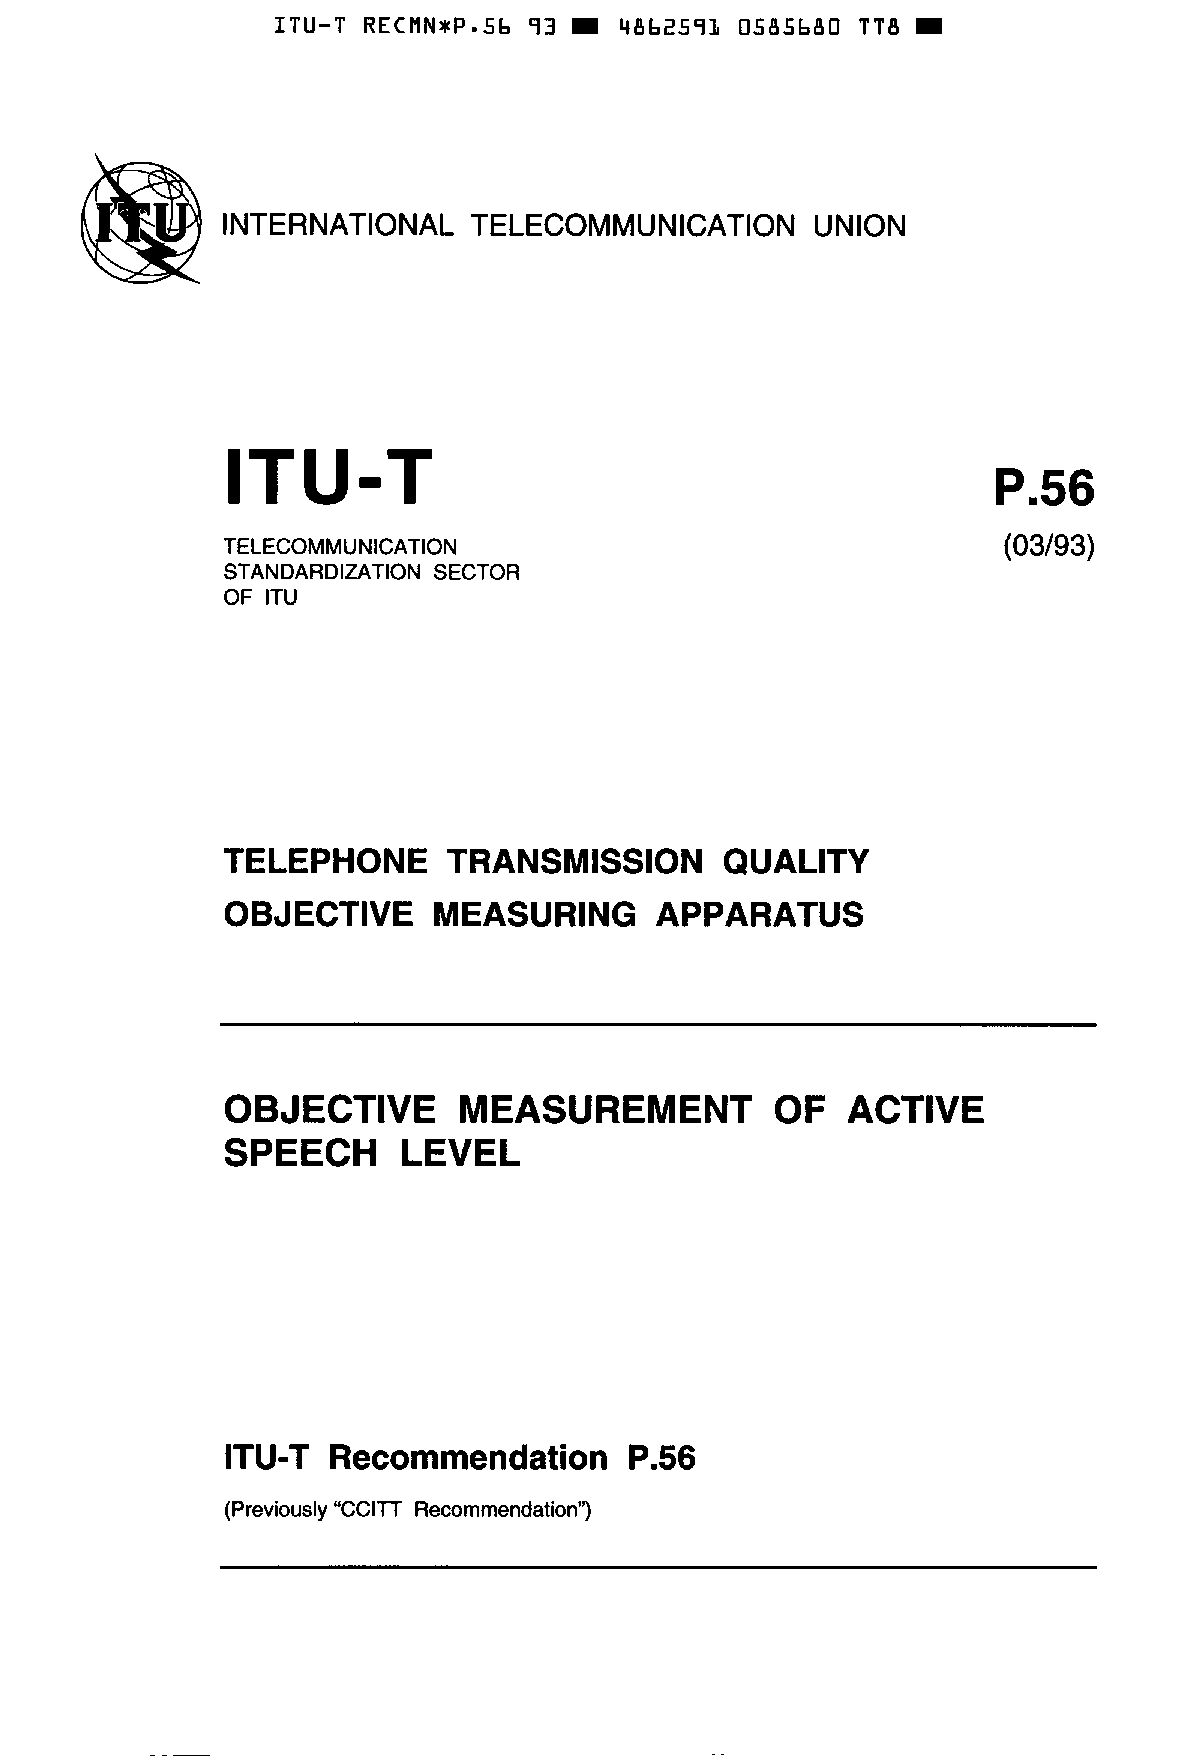 ITU-T P.56-1993